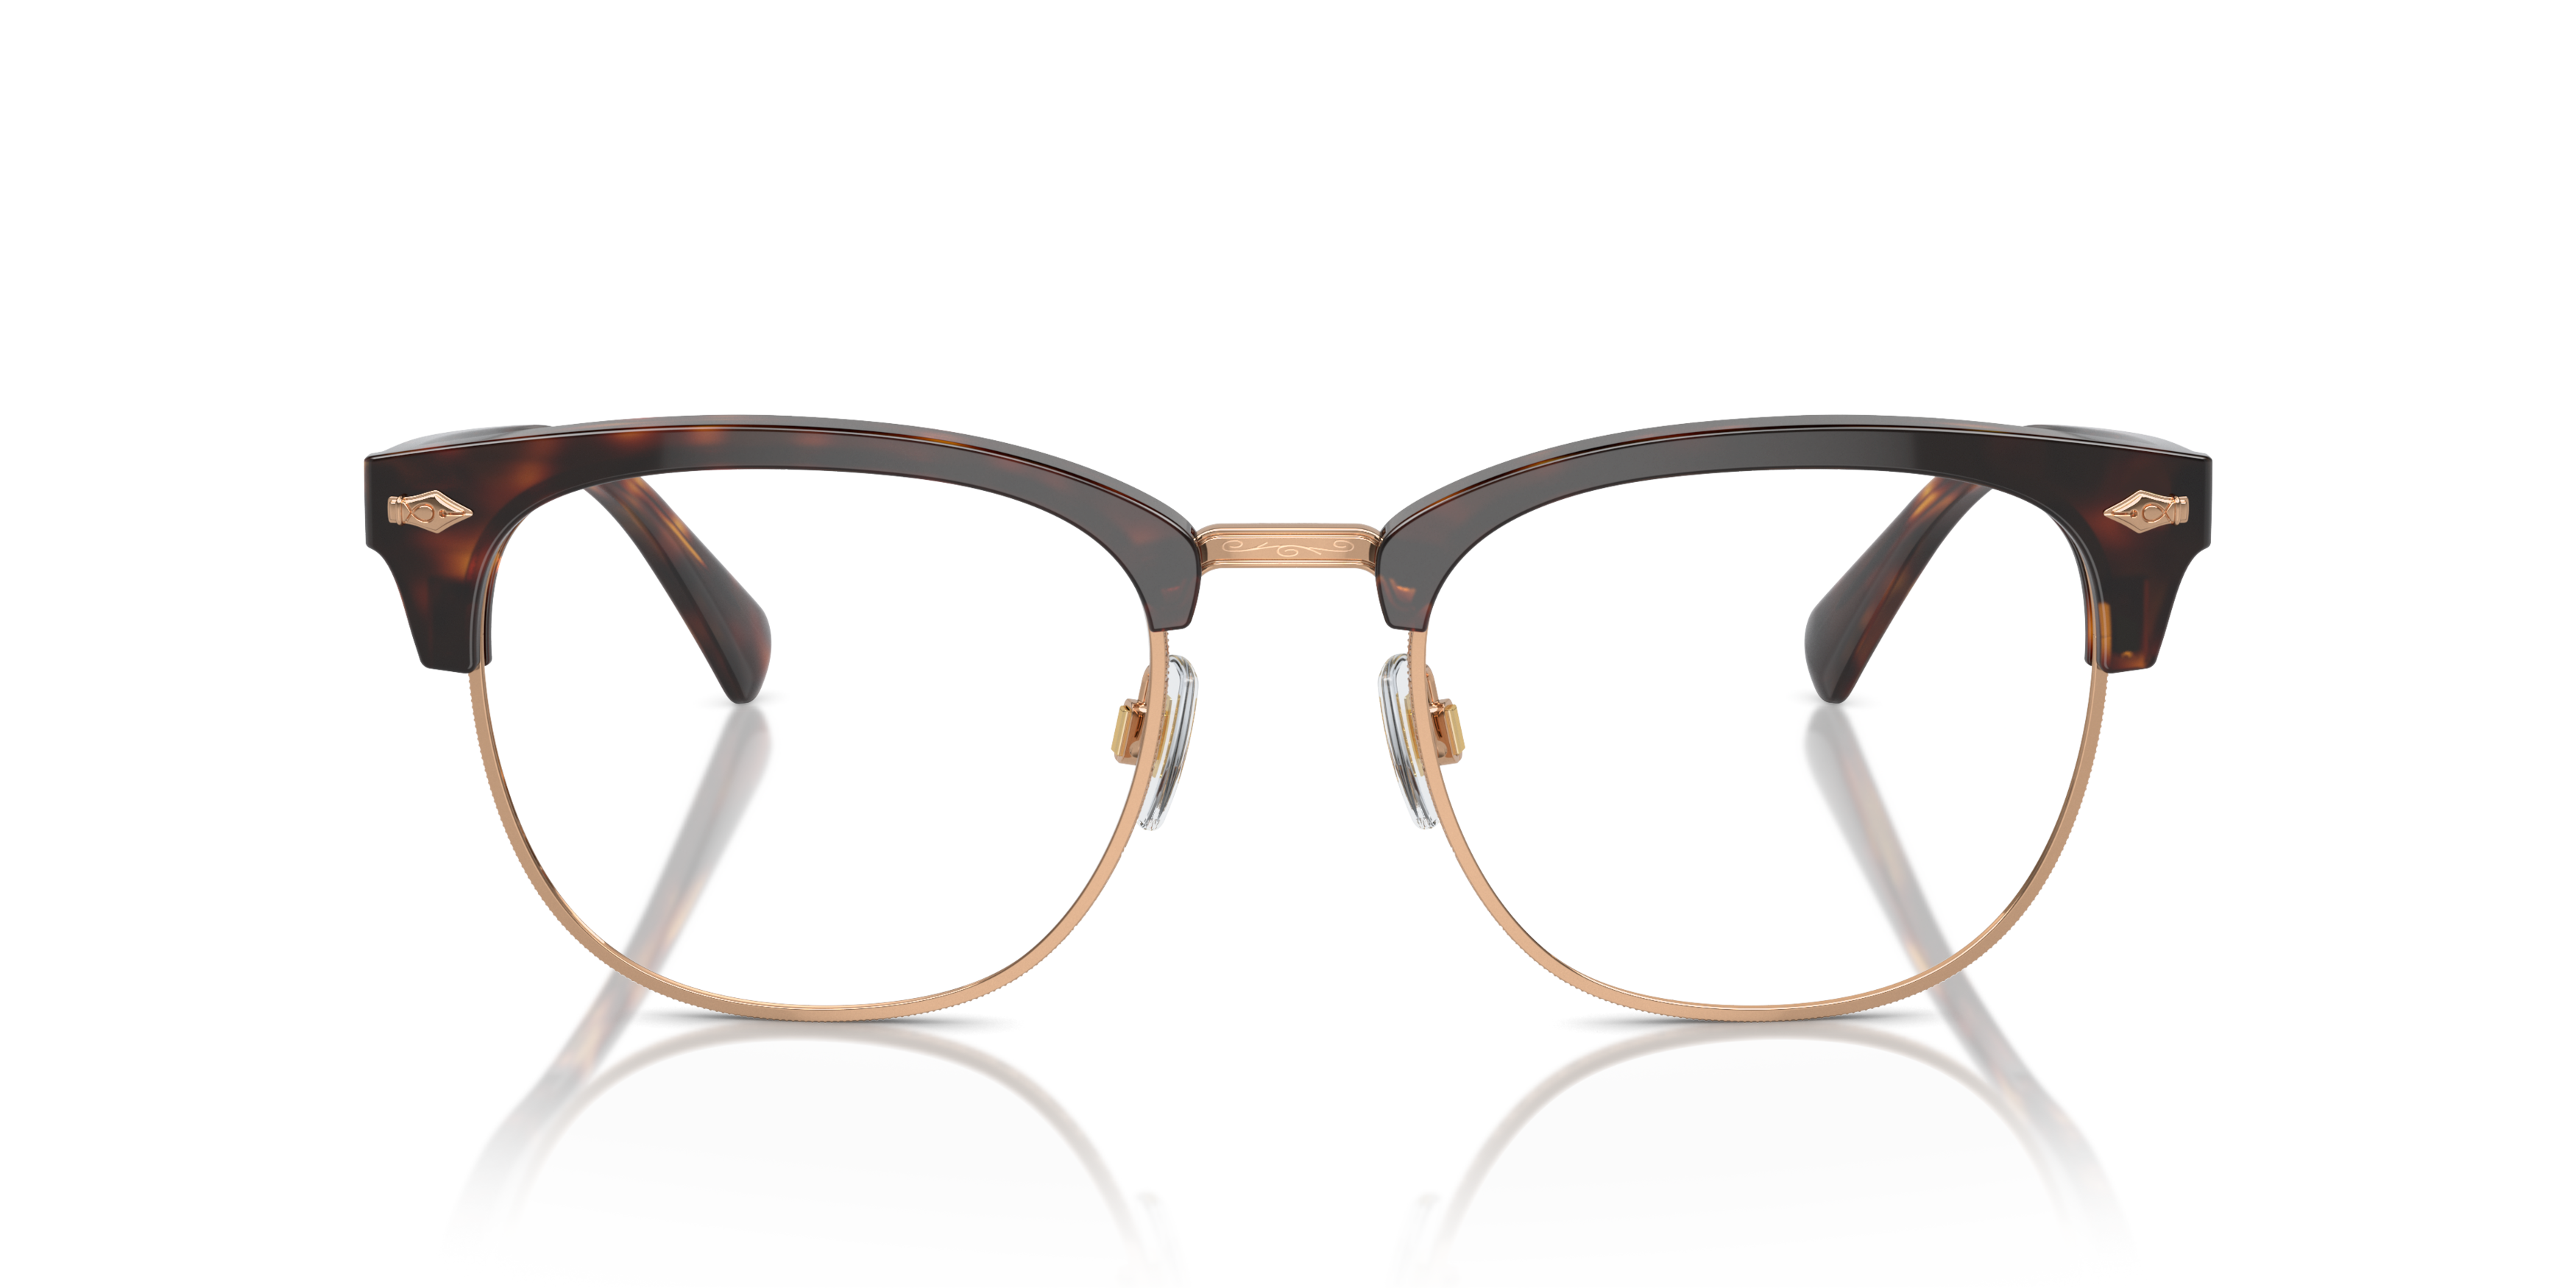 Front Polo Ralph Lauren PH 2277 Glasses Transparent / Tortoise Shell